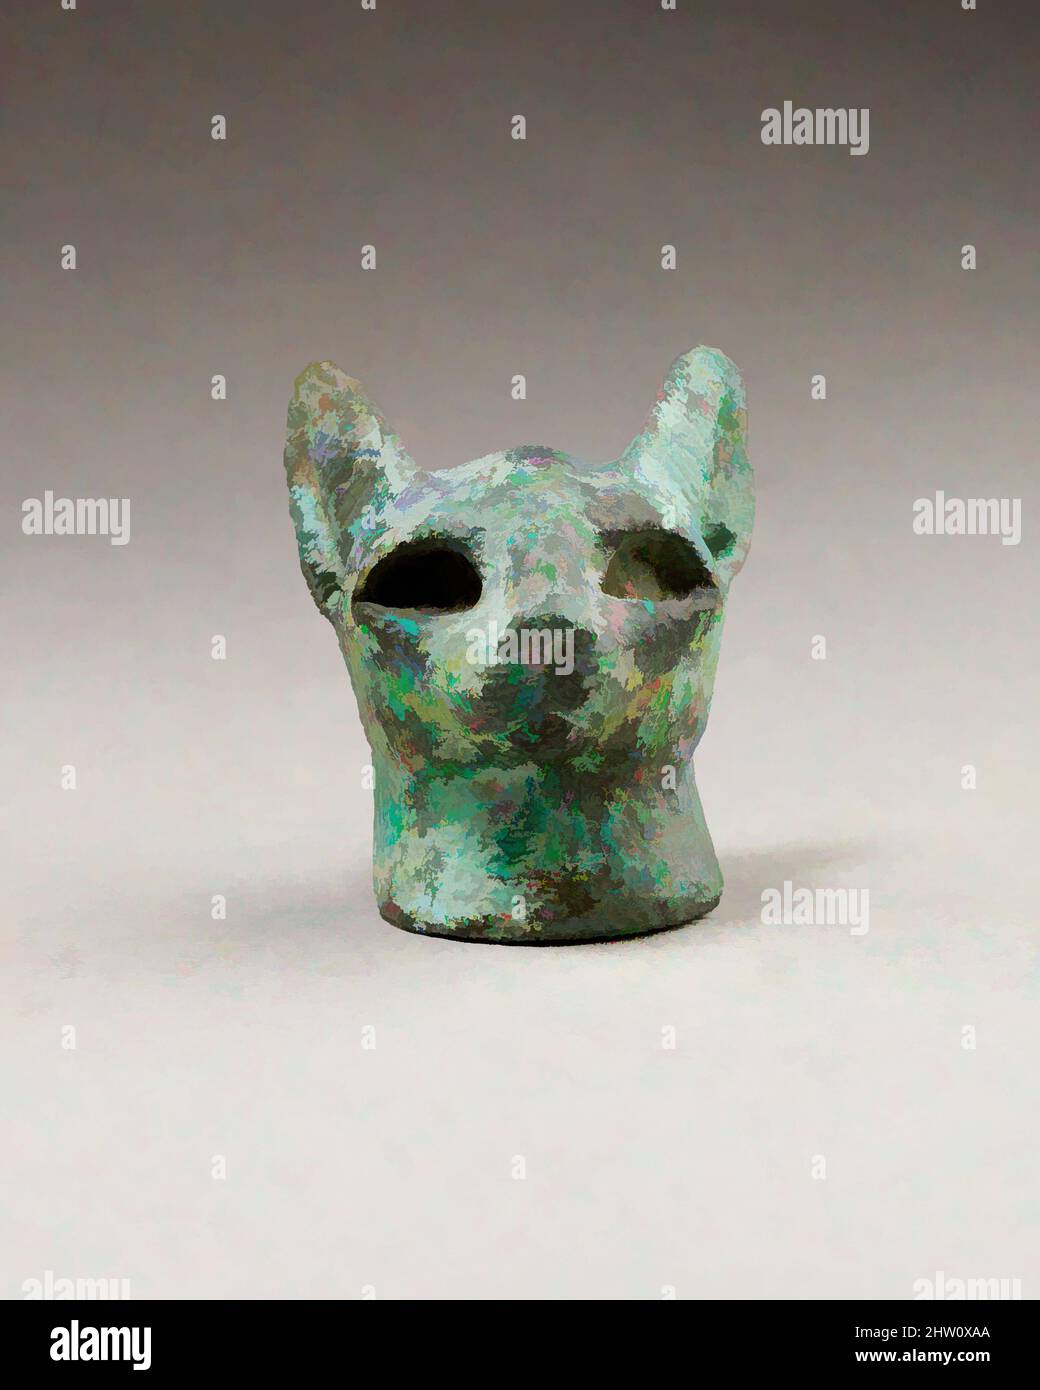 Kunst inspiriert vom Kopf einer Katze, späte Periode–ptolemäische Periode, 664–30 v. Chr., aus Ägypten, Kupfermetall, H. 5,2 cm (2 1/16 in.); W. 4,2 cm (1 5/8 in.); D. 4,5 cm (1 3/4 in.) war die Katze der Göttin Bastet heilig, wurde in Heiligtümern angeboten und in tierischen Nekropolen deponiert, klassische Werke, die von Artotop mit einem Schuss Moderne modernisiert wurden. Formen, Farbe und Wert, auffällige visuelle Wirkung auf Kunst. Emotionen durch Freiheit von Kunstwerken auf zeitgemäße Weise. Eine zeitlose Botschaft, die eine wild kreative neue Richtung verfolgt. Künstler, die sich dem digitalen Medium zuwenden und die Artotop NFT erschaffen Stockfoto